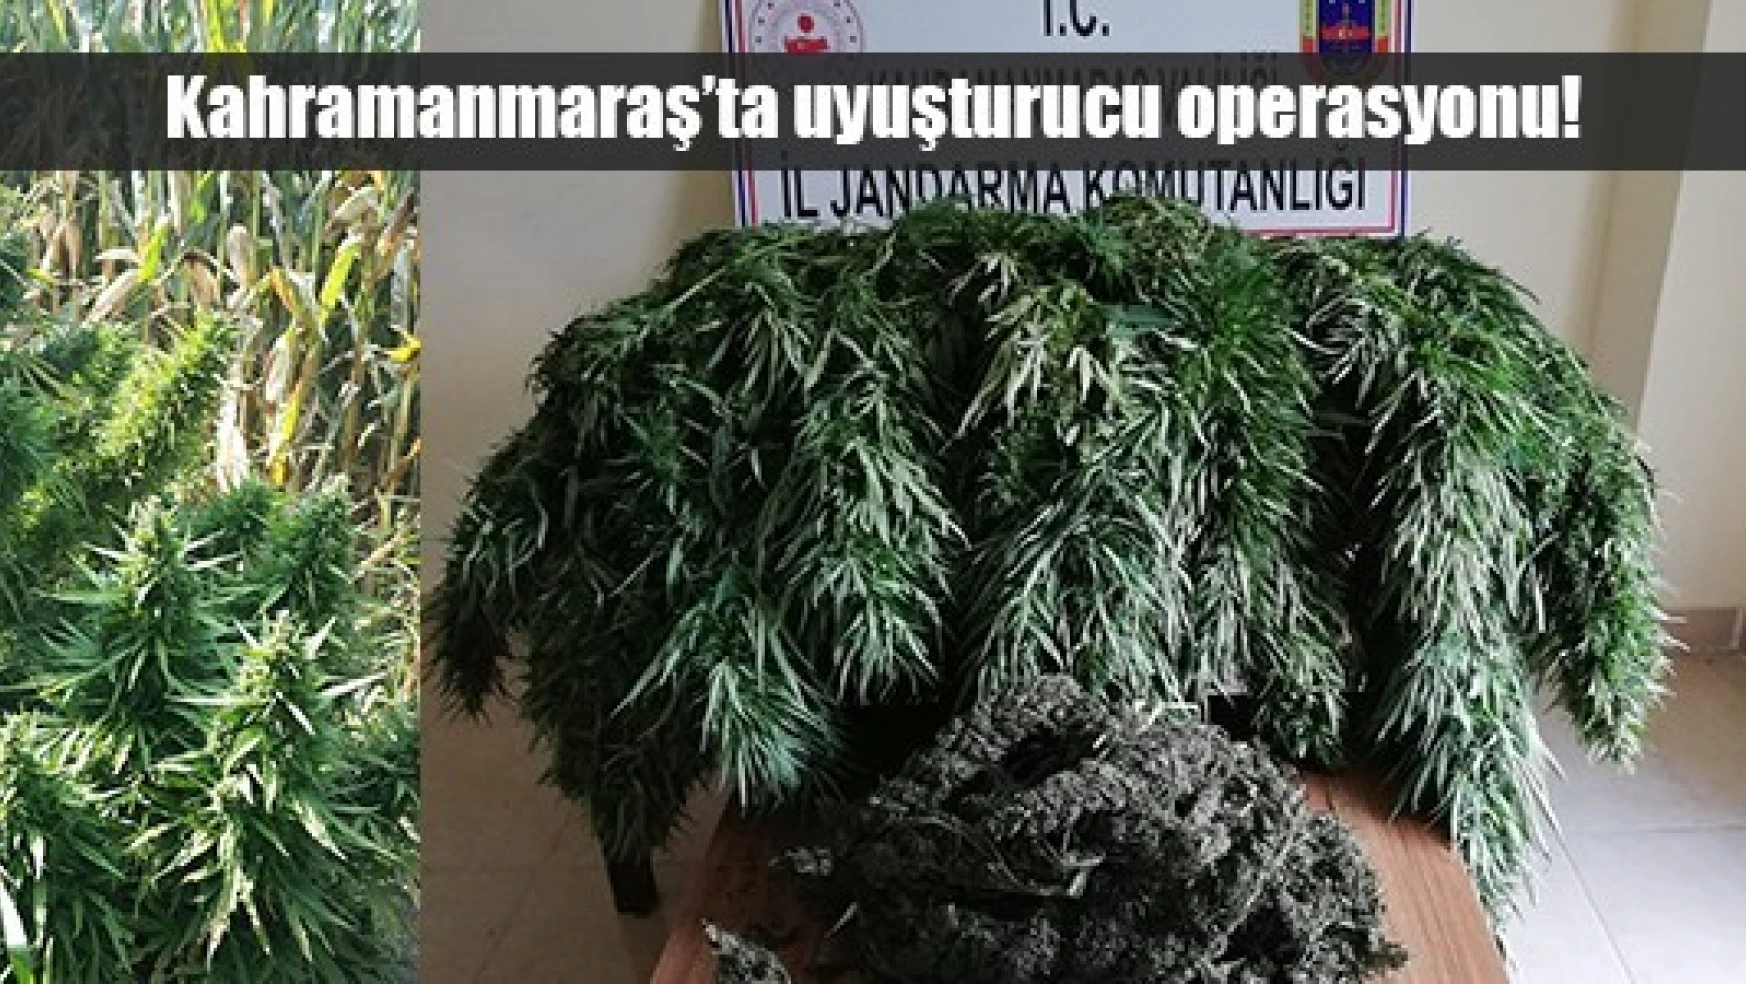 Kahramanmaraş'ta uyuşturucu operasyonu!